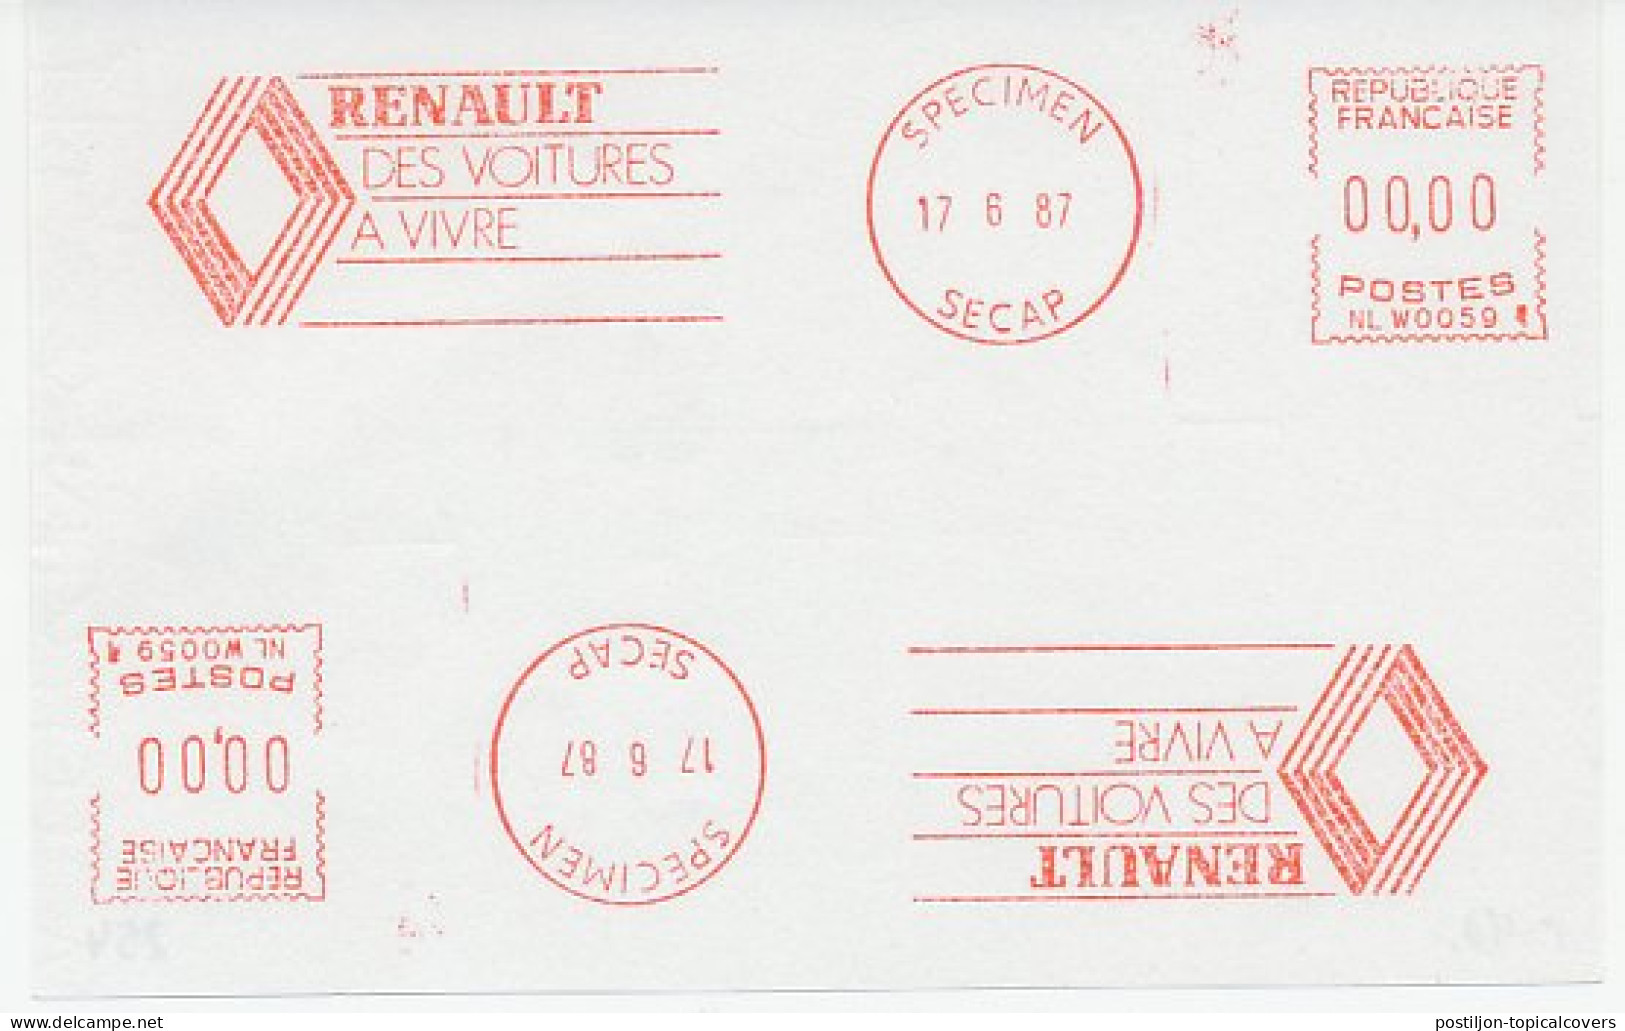 Specimen Meter Sheet France 1987 Car - Renault - Voitures